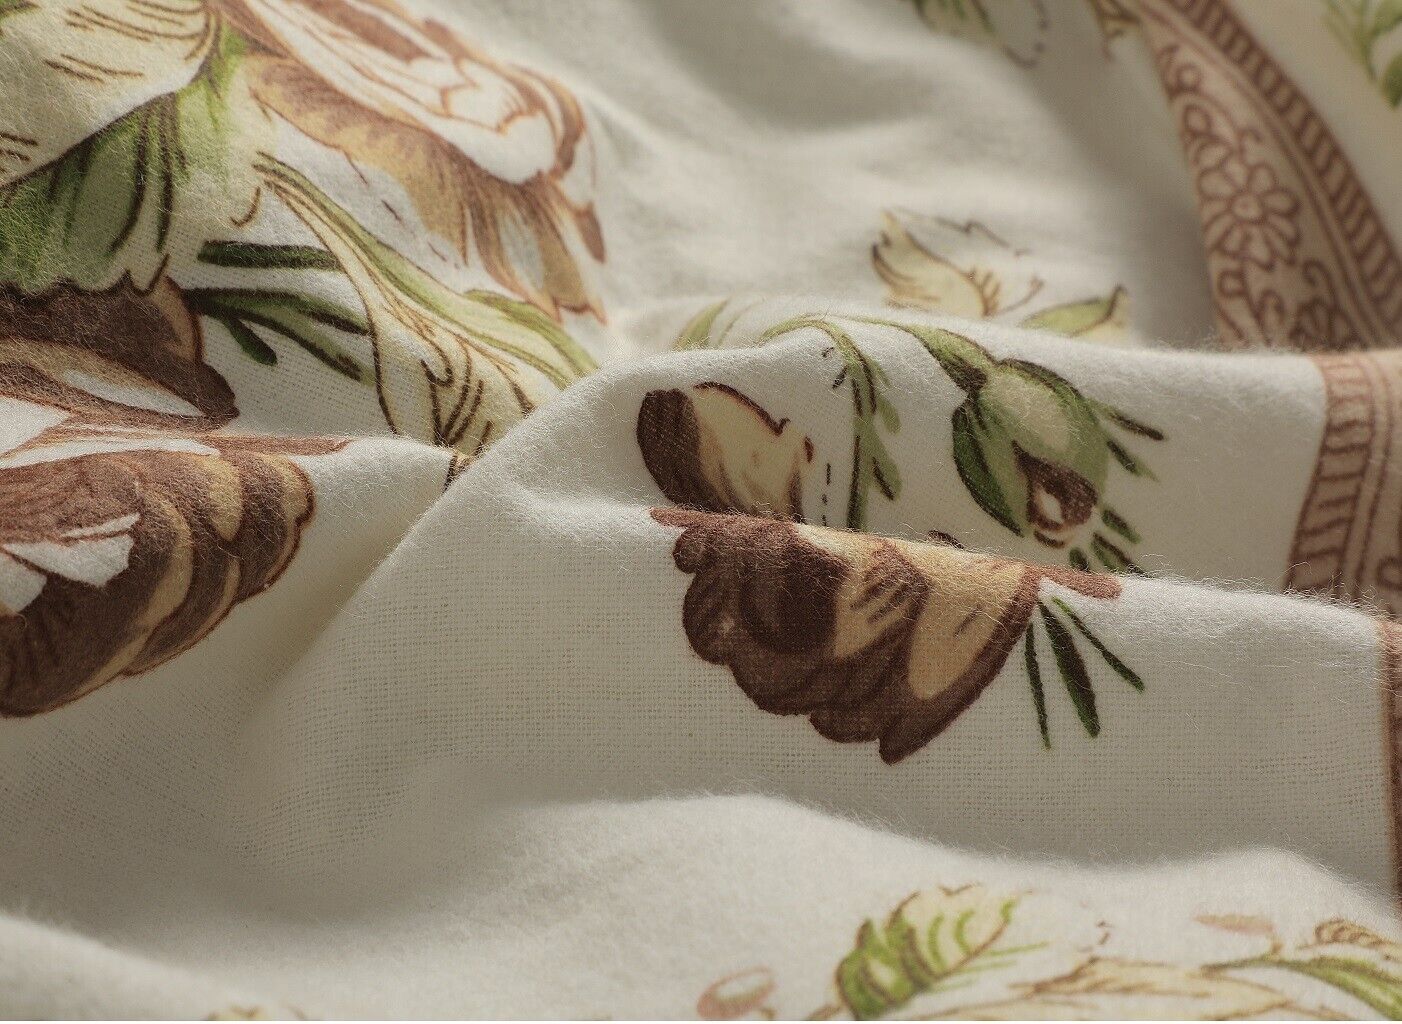 Natural Floral Flannelette Brushed Cotton Thermal Sheet Set